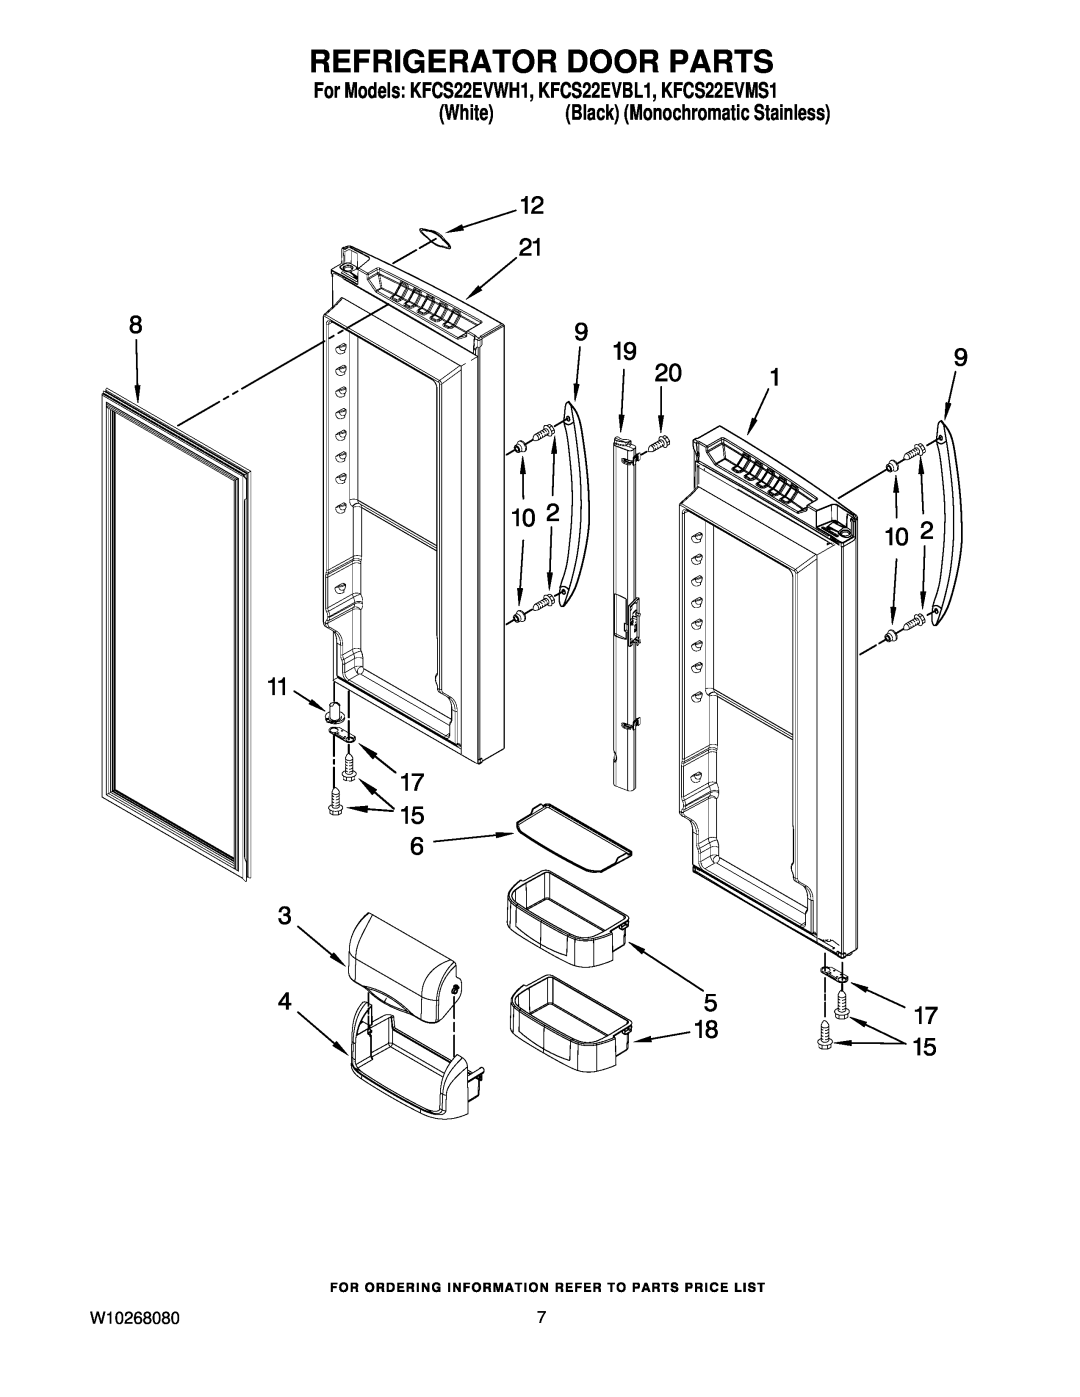 KitchenAid manual Refrigerator Door Parts, For Models KFCS22EVWH1, KFCS22EVBL1, KFCS22EVMS1, White 